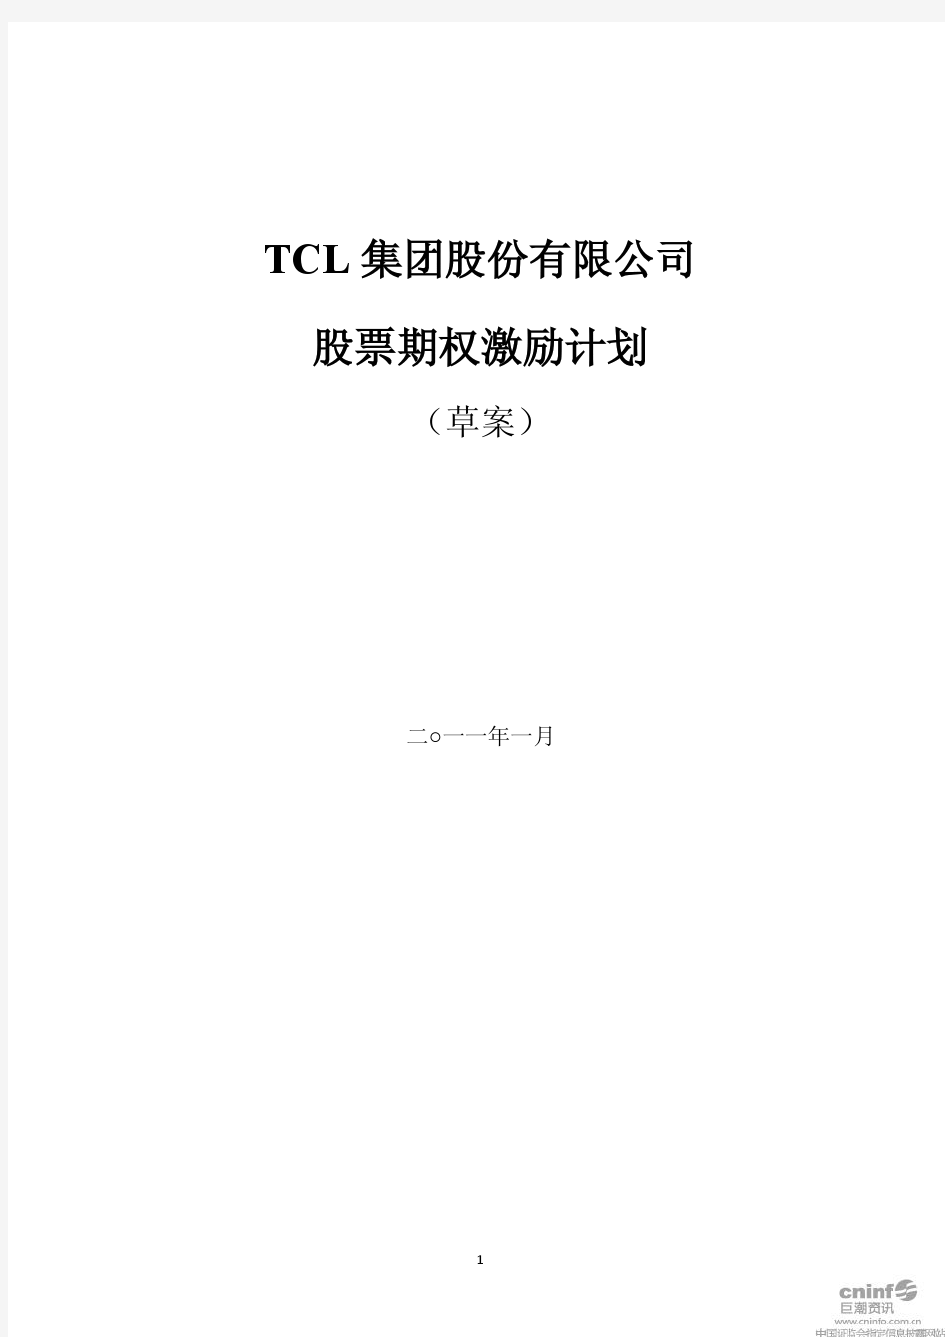 TCL股票期权激励计划